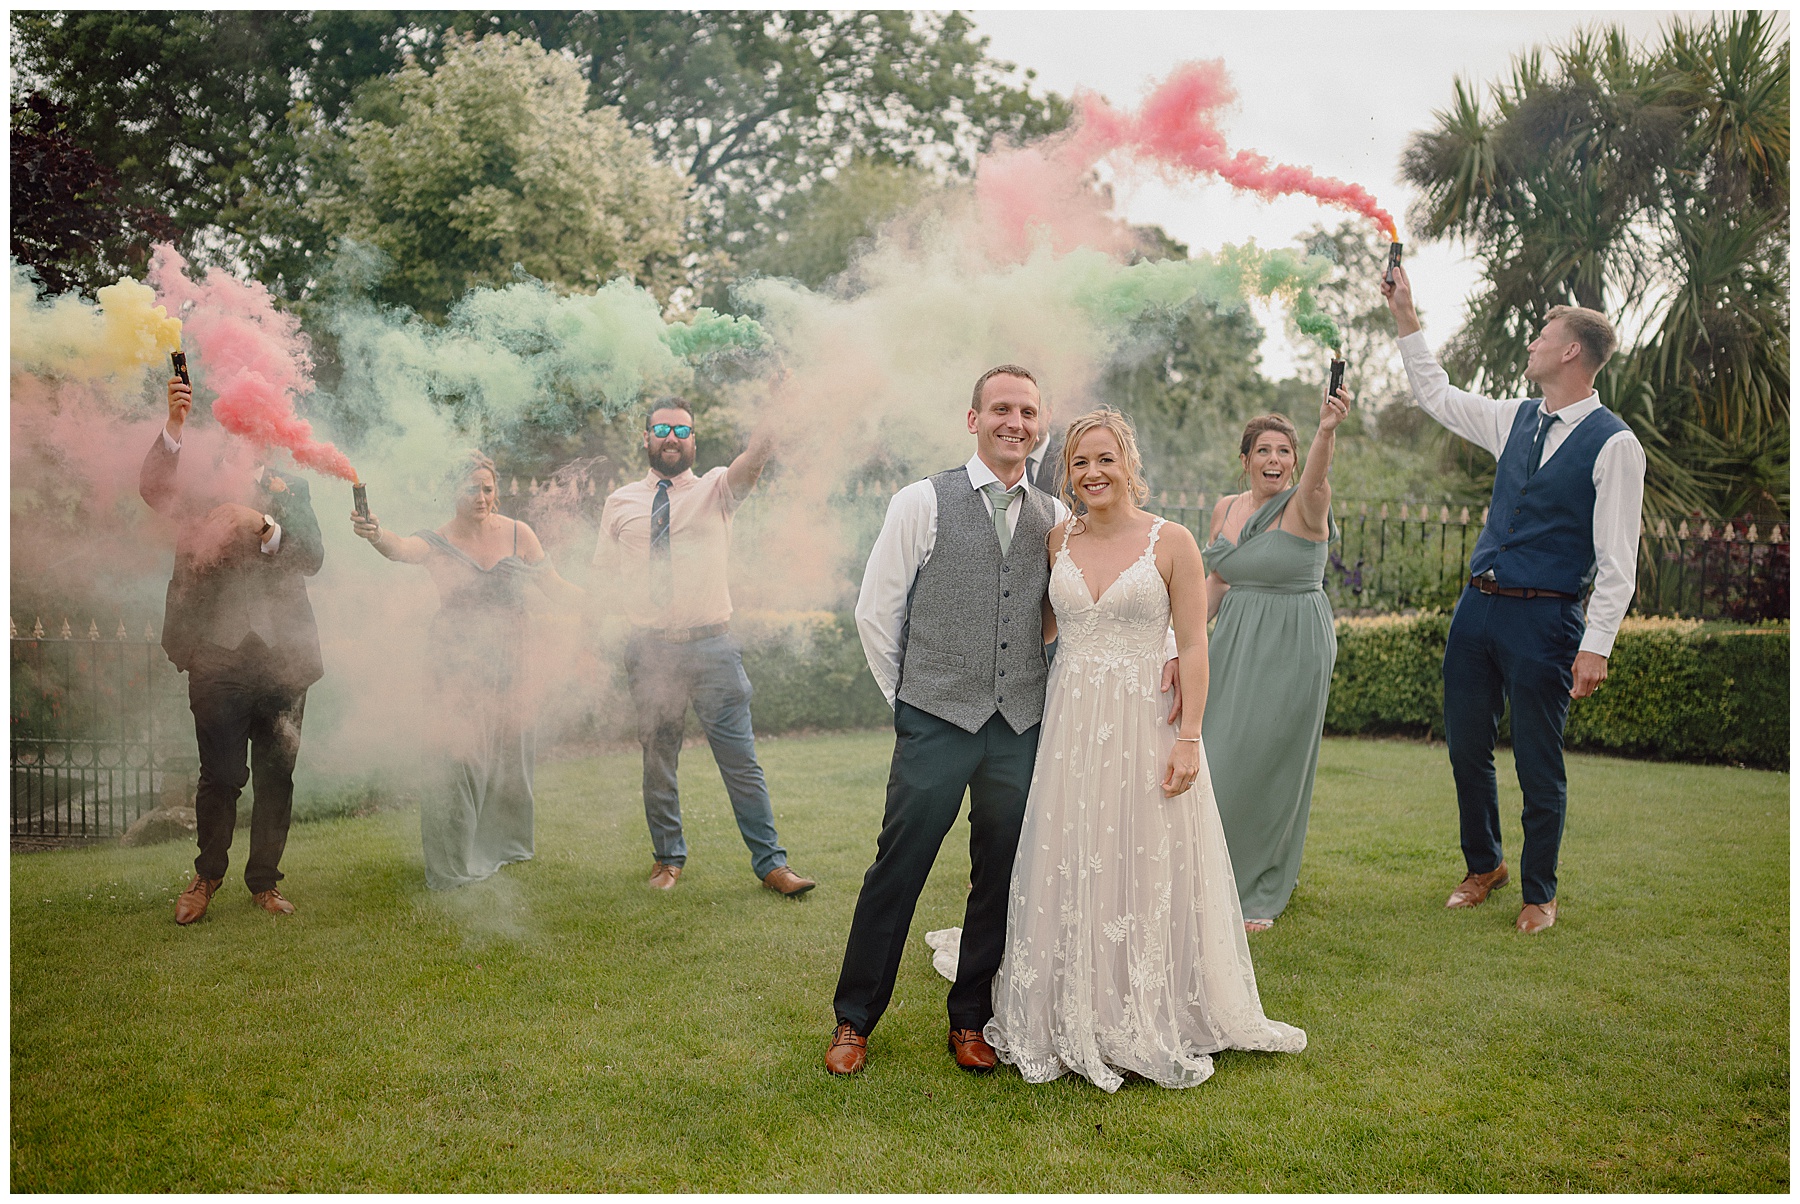 Smoke Bombs at Gower Wedding